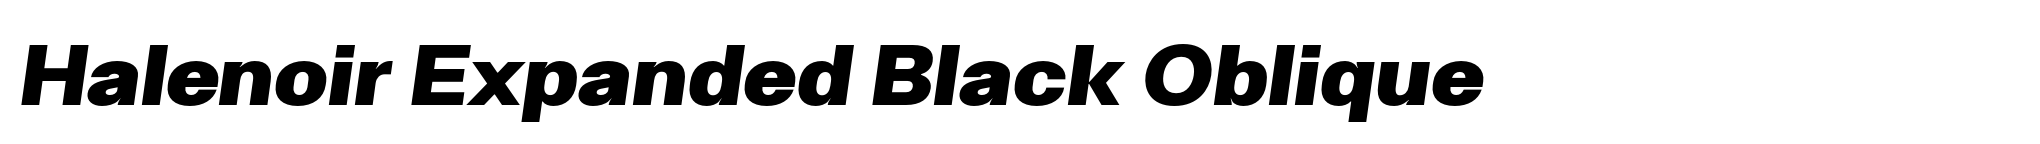 Halenoir Expanded Black Oblique image